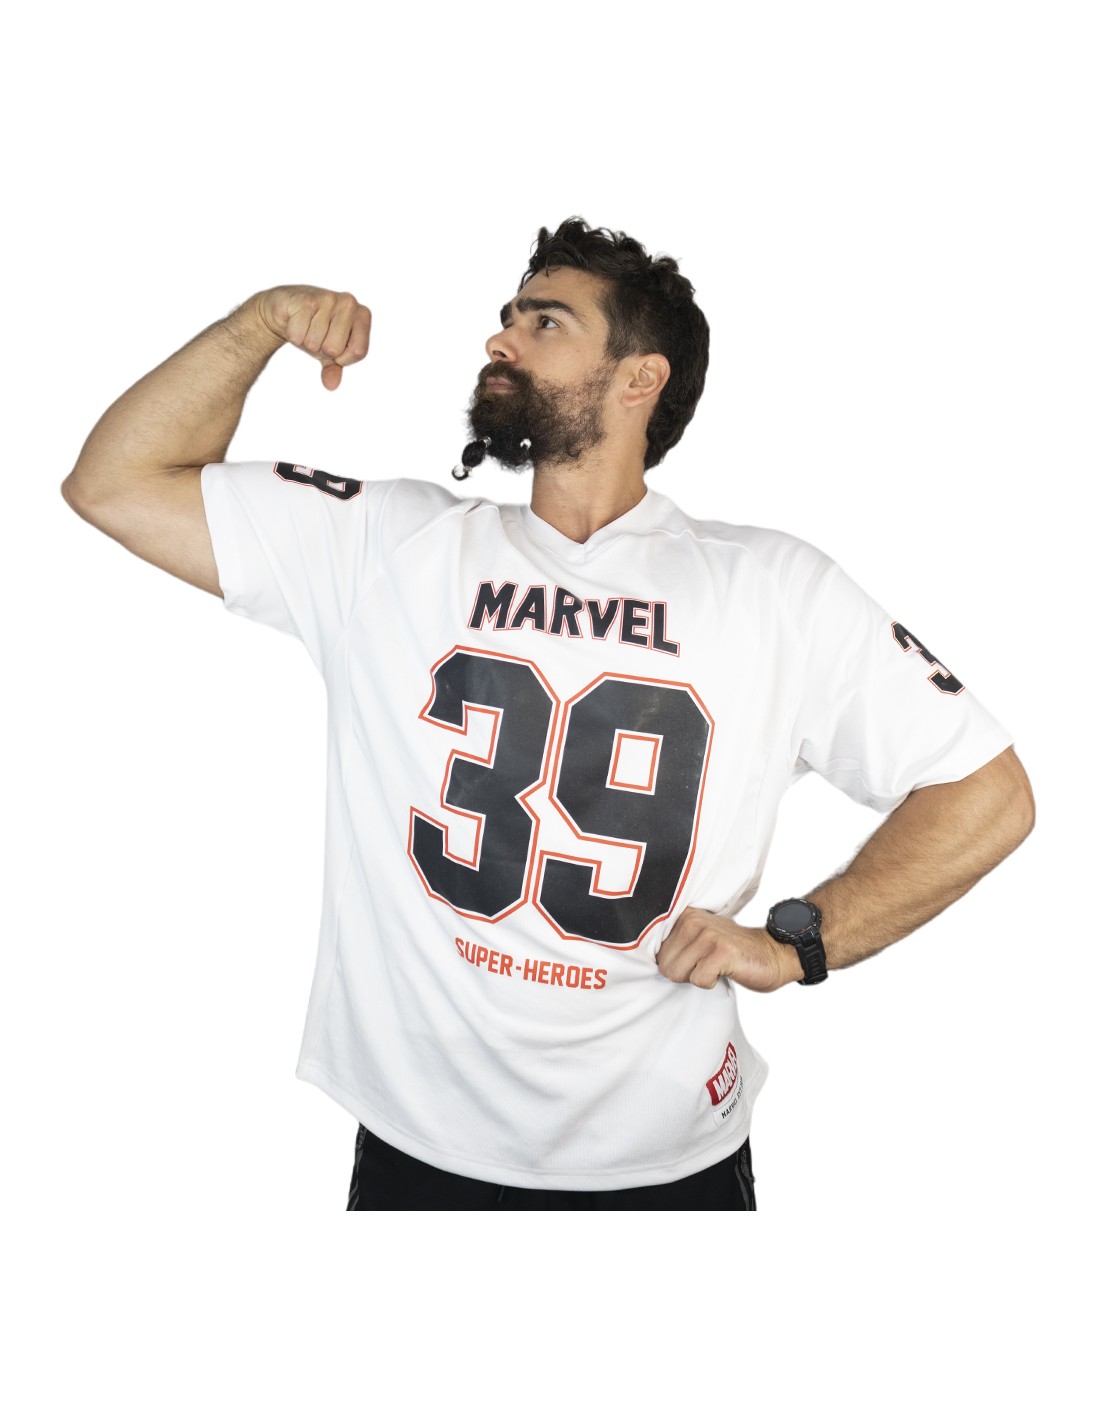 Seguir escala Cambiarse de ropa Camiseta de fútbol americano de Marvel| Frikimasters.es